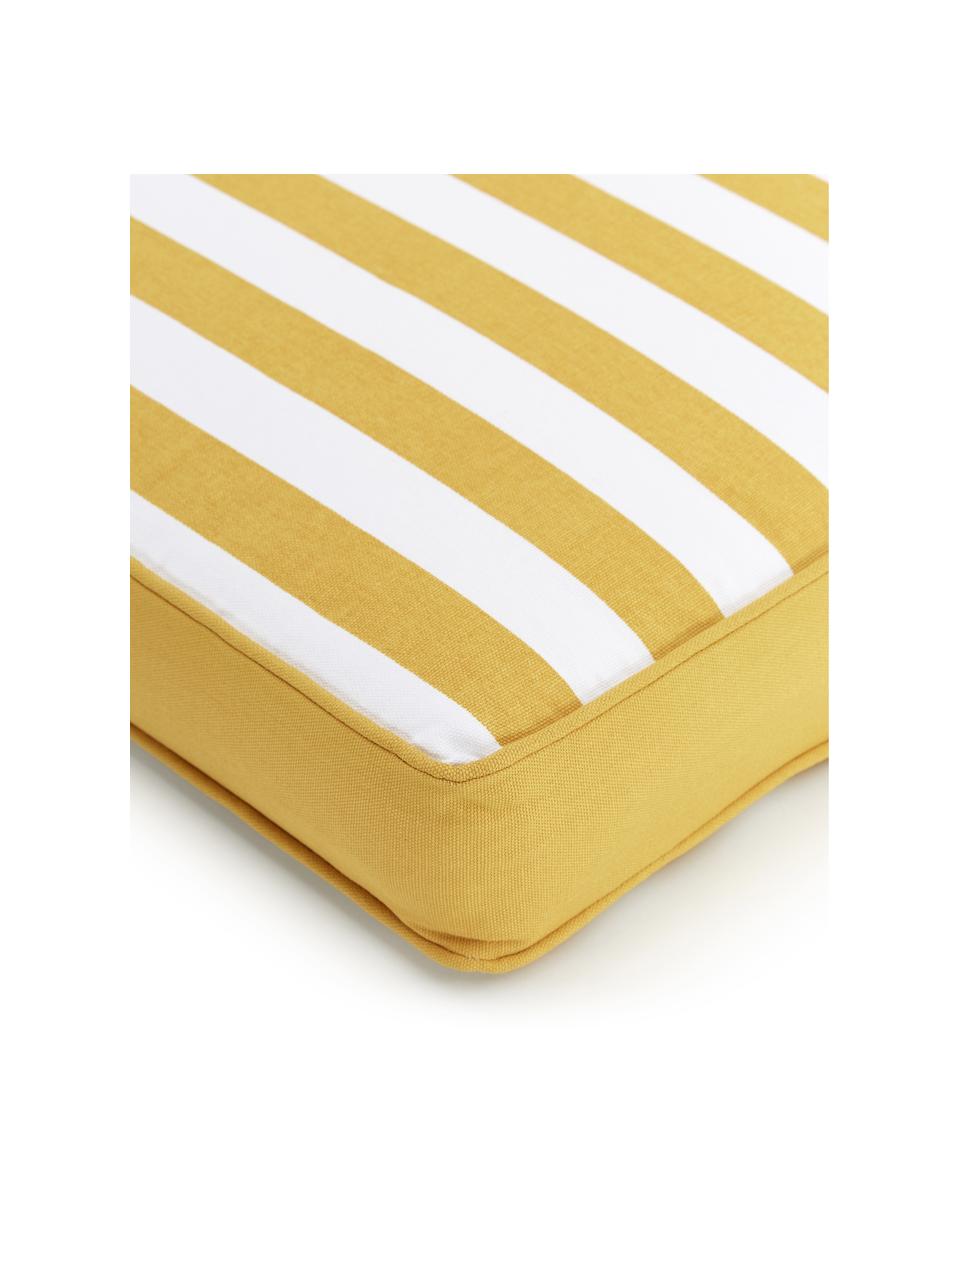 Cuscino sedia alto a righe color giallo/bianco Timon, Rivestimento: 100% cotone, Giallo & bianco, rigato, Larg. 40 x Lung. 40 cm